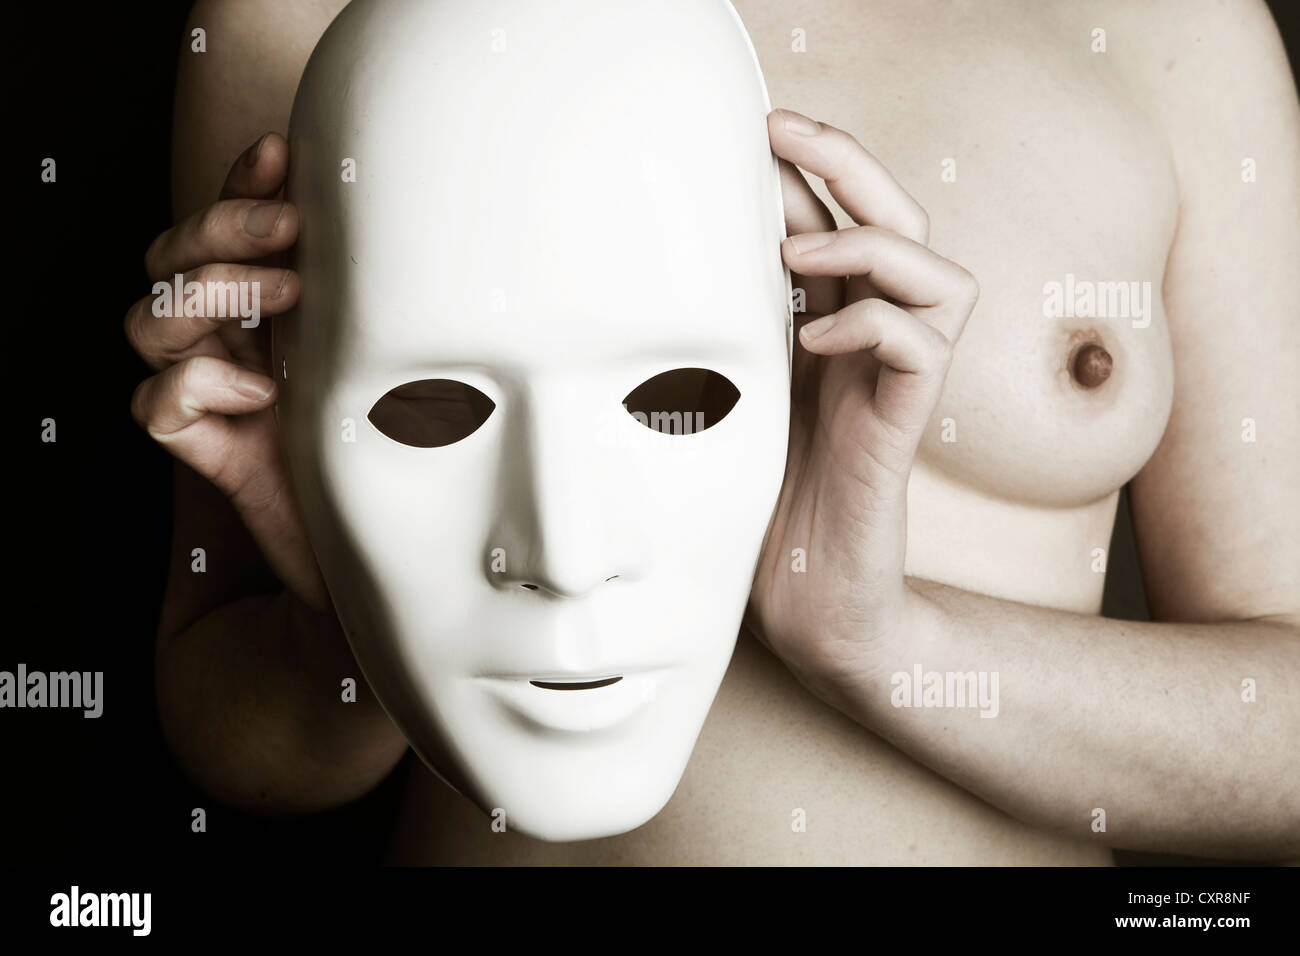 Frau, nackt, mit Maske vor ihrer Brust Stockfotografie - Alamy